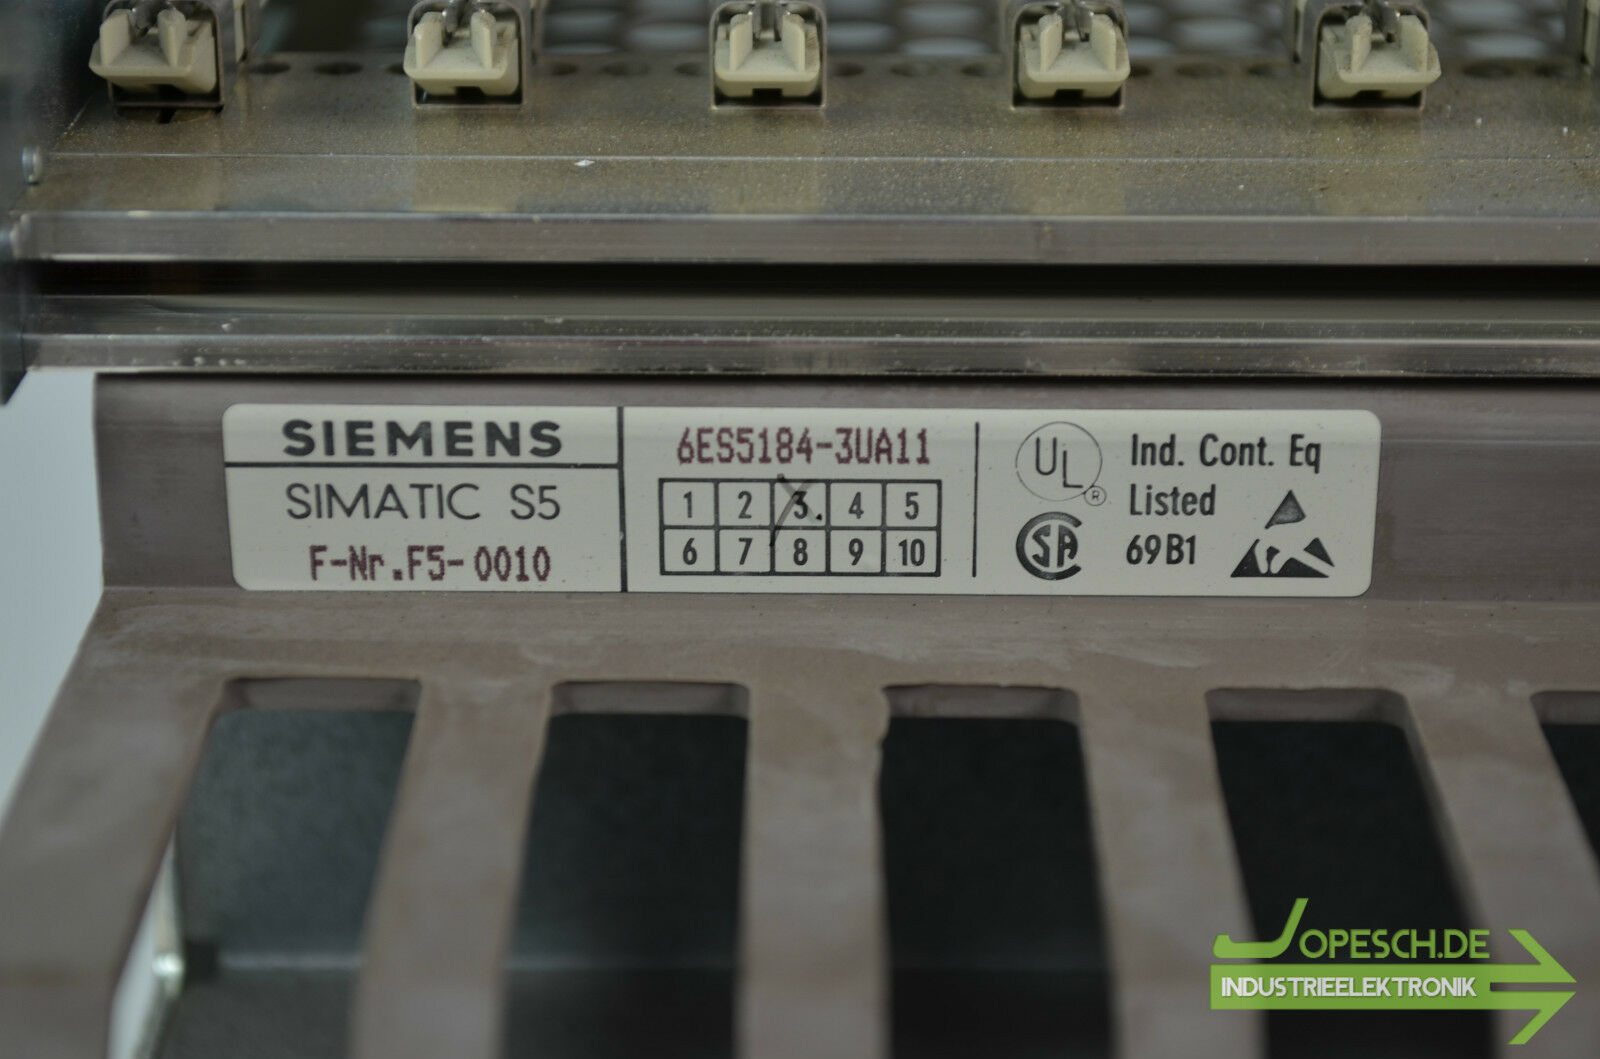 Siemens simatic S5 Rack 6ES5184-3UA11 ( 6ES5 184-3UA11 )